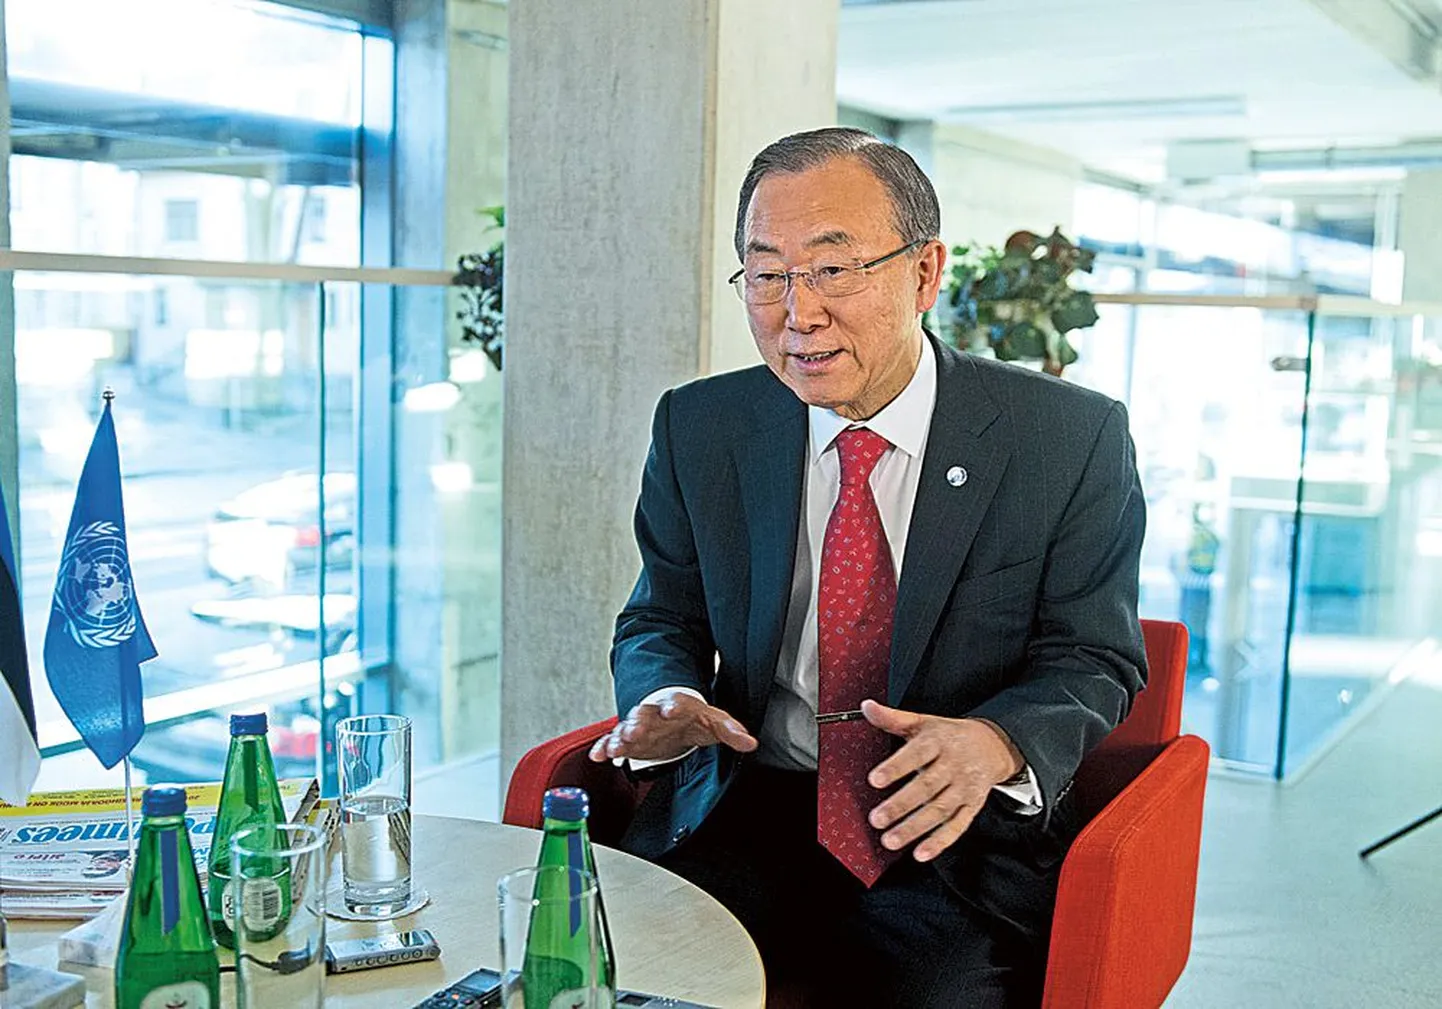 Пан Ги Мун, посетивший Таллинн с визитом, стал первым генеральным секретарем ООН, официально побывавшим в Эстонии.